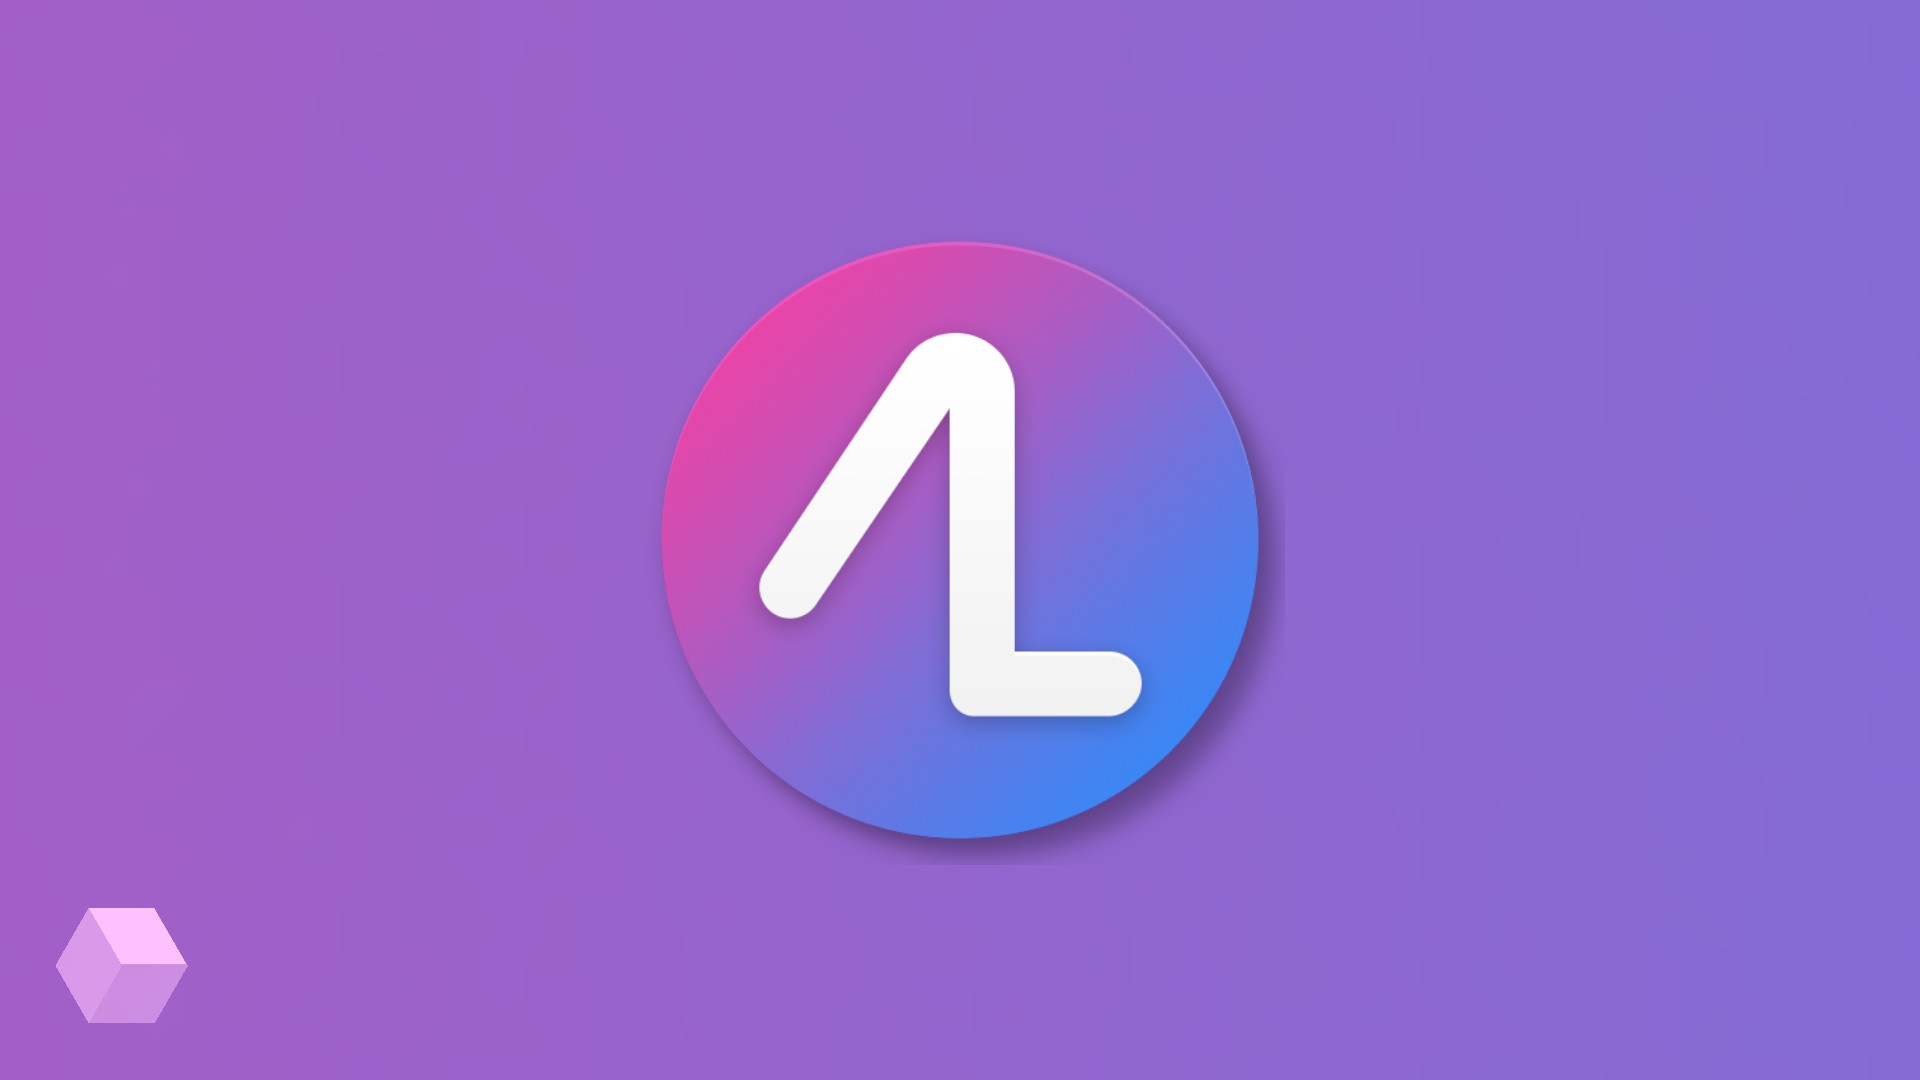 Action Launcher обзавёлся дизайном в стиле Android Pie